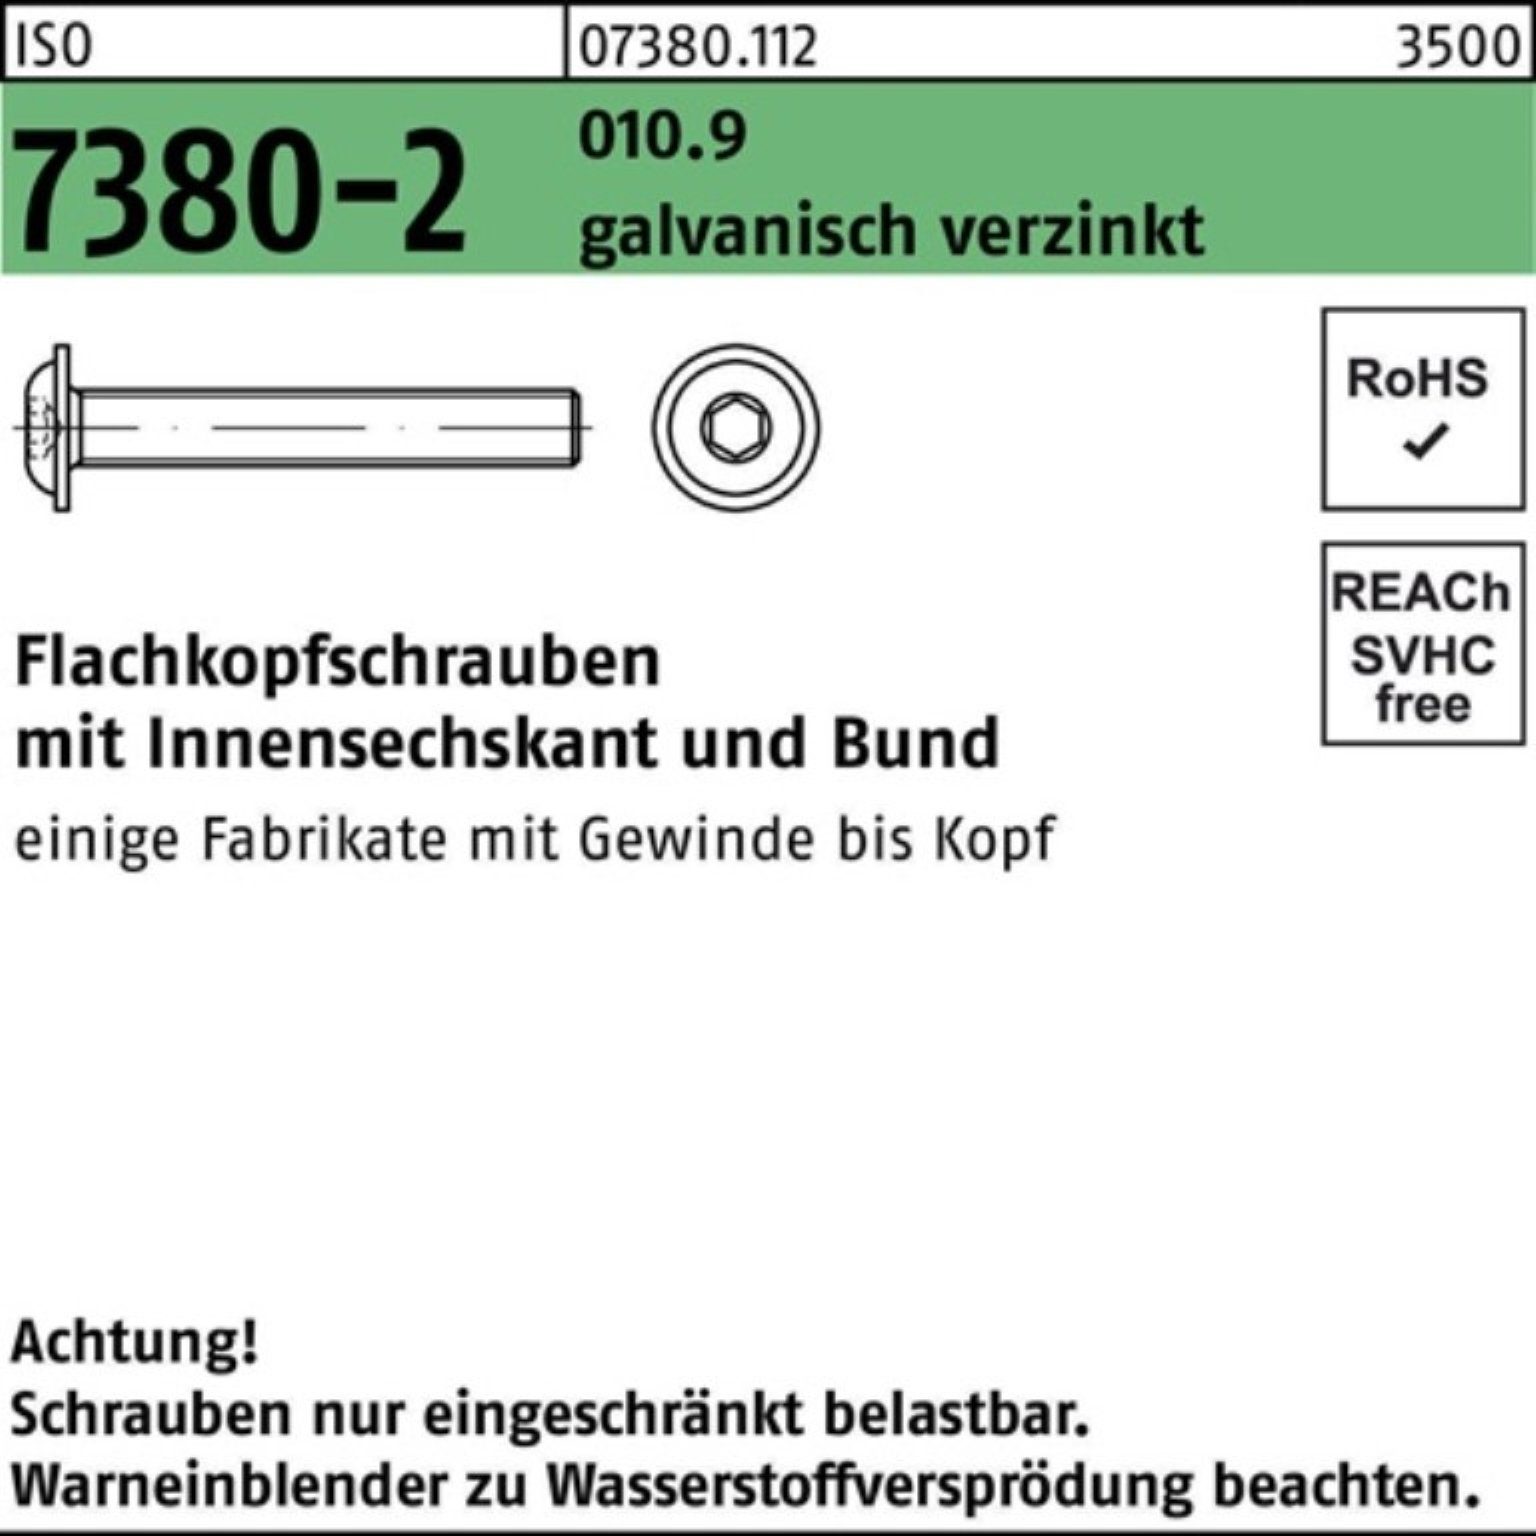 gal M6x14 Reyher 010.9 Pack 7380-2 Bund/Innen-6kt ISO Flachkopfschraube 500er Schraube